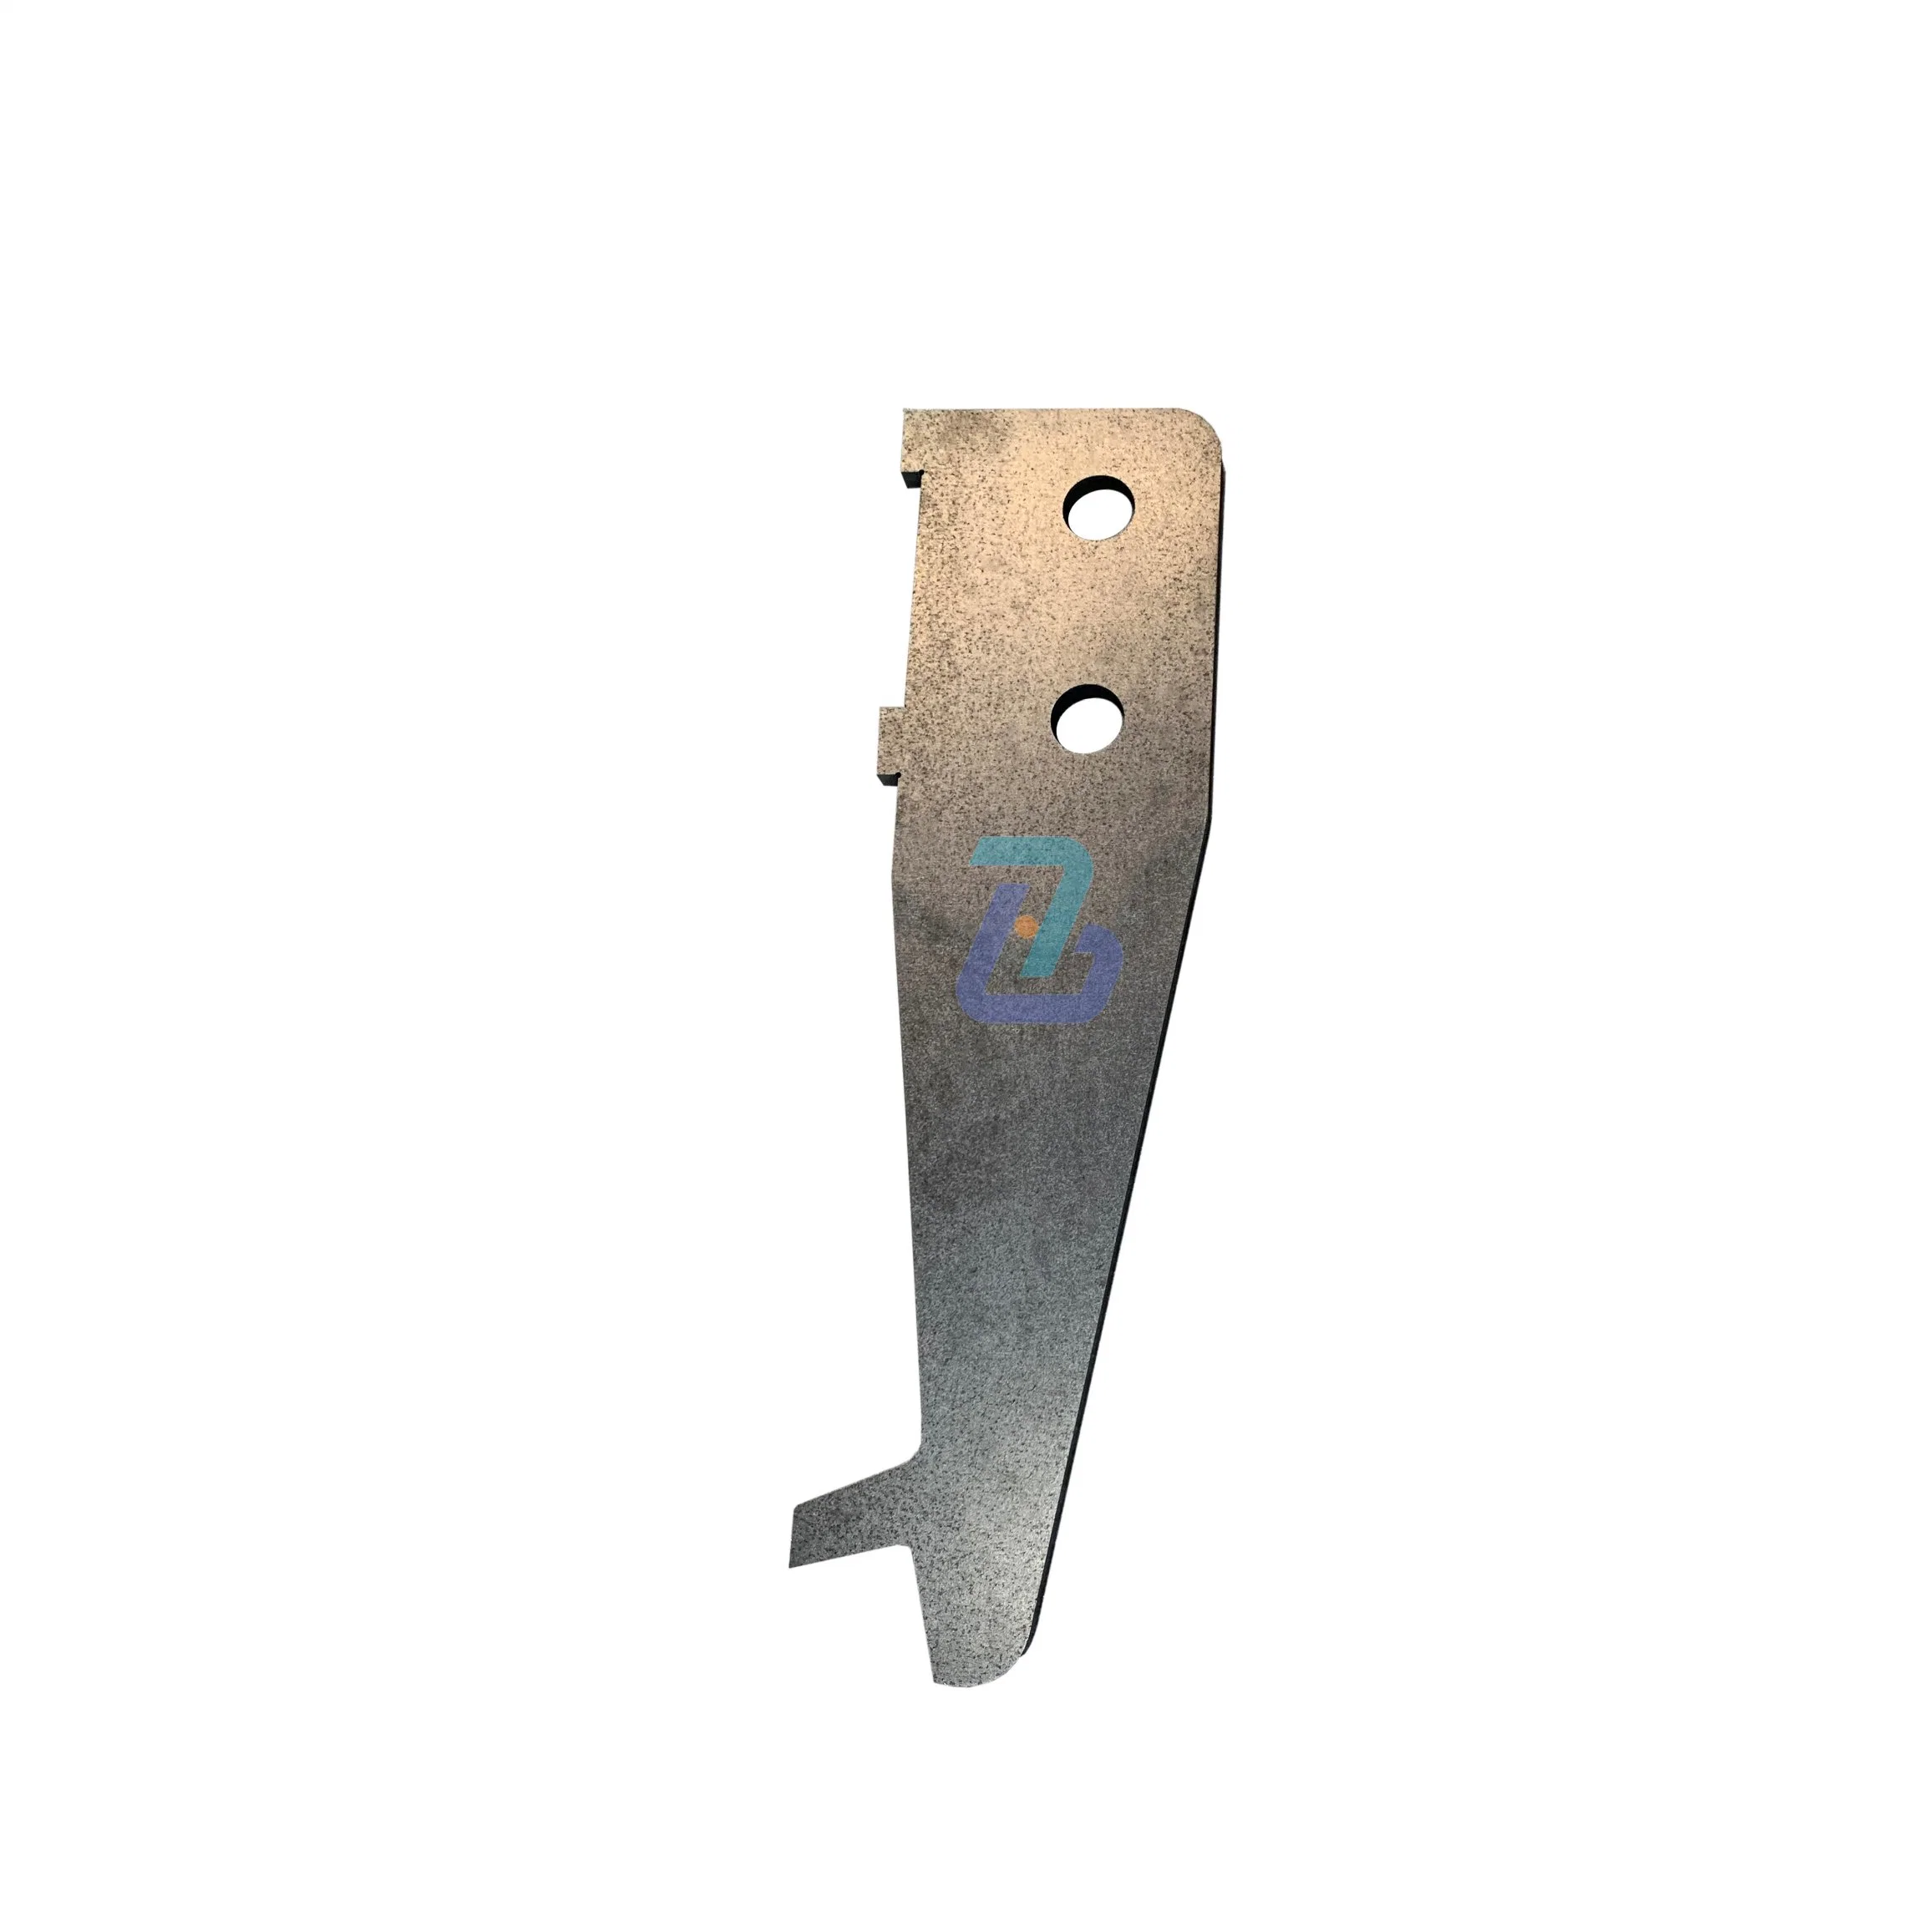 Fiche de service OEM personnalisés Fabrication métallique en acier inoxydable de flexion de découpe laser de la plaque de panneau d'estampage de soudage